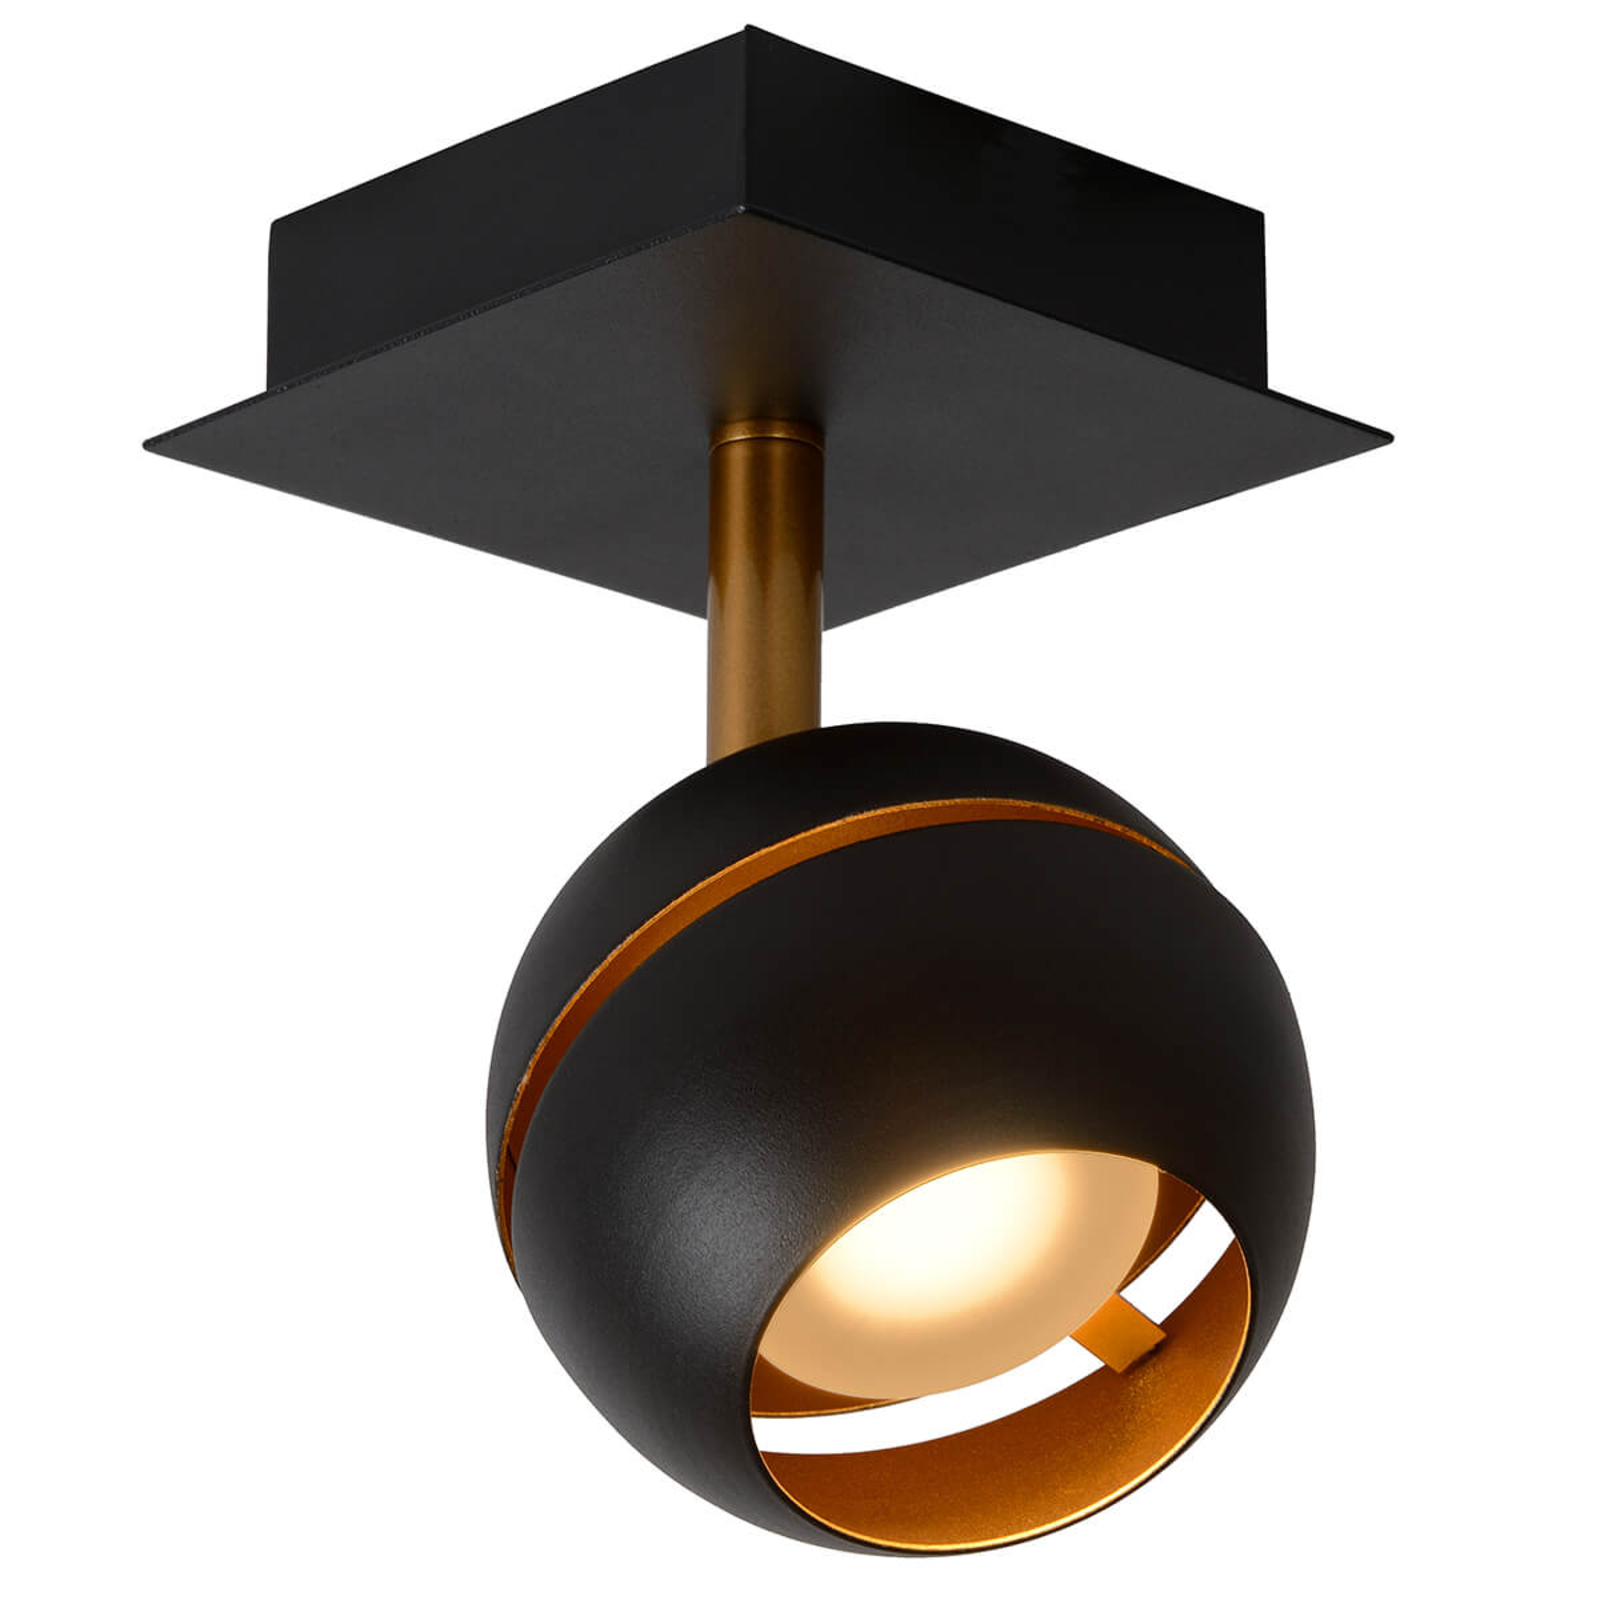 LED ceiling spotlight Binari, spherical, black